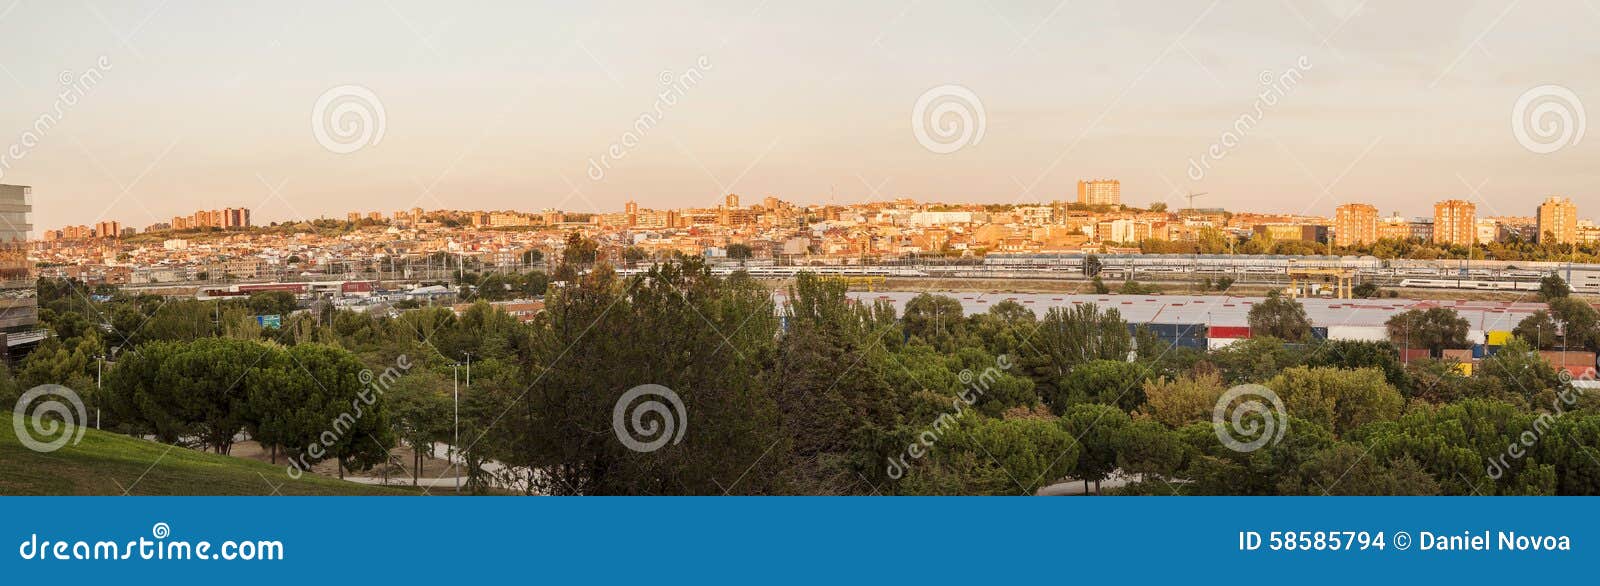 panoramic of madrid